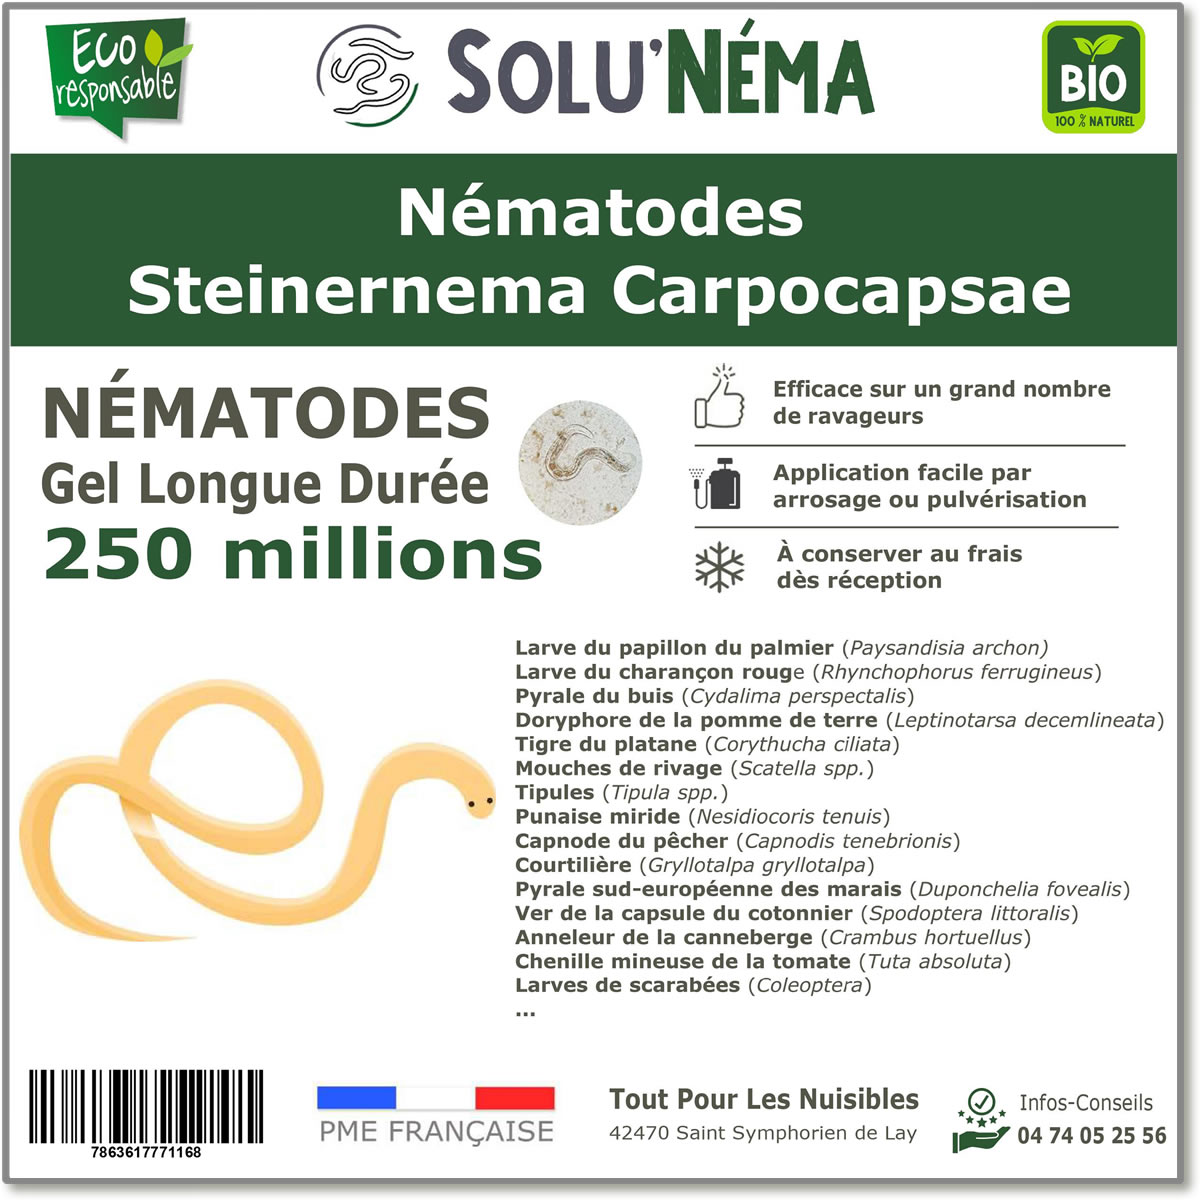 250 Millions de nématodes Steinernema Carpocapsae (SC)